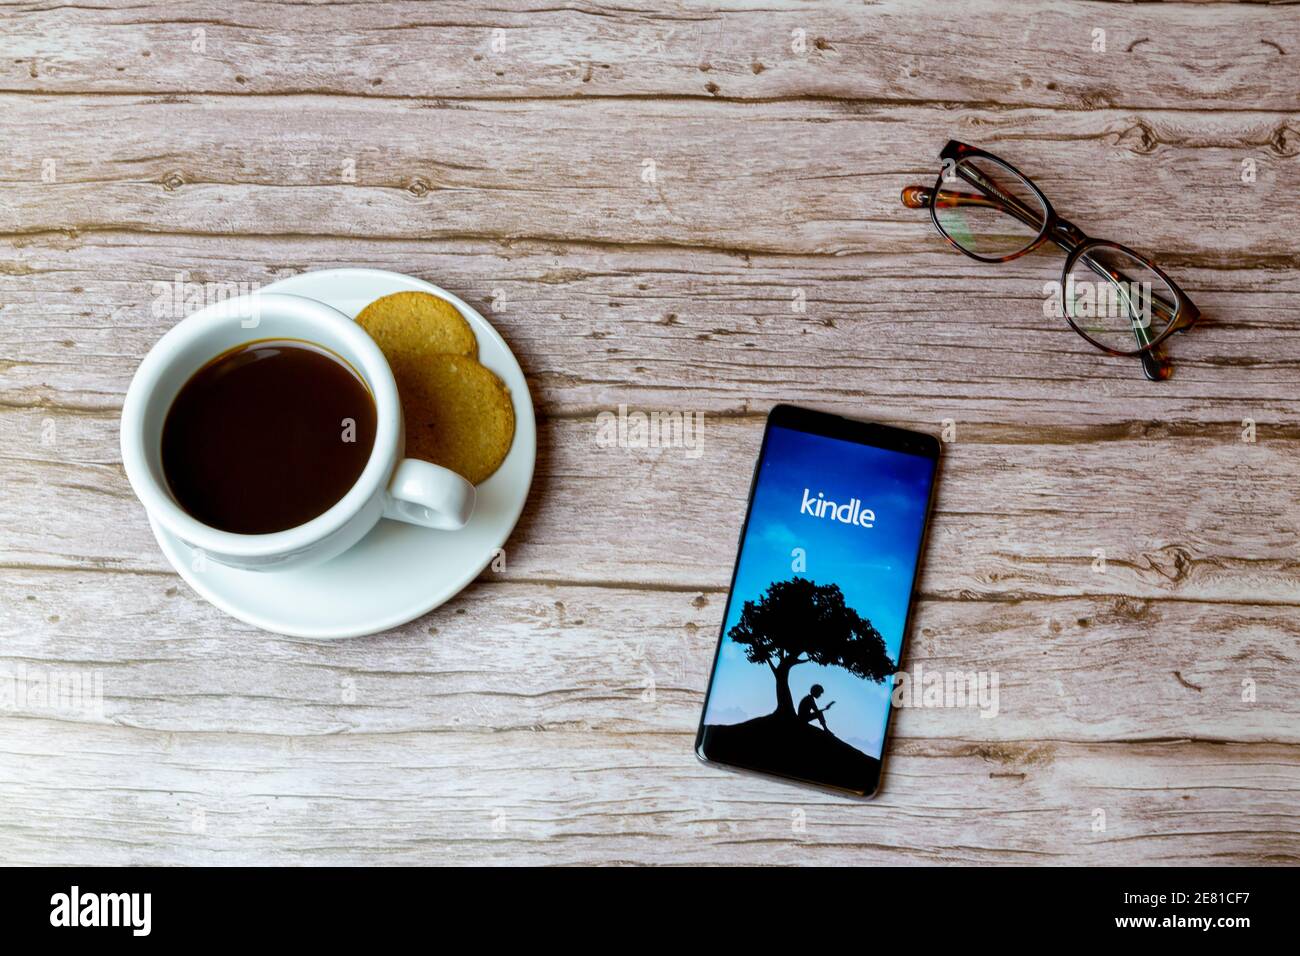 Ein Handy oder Handy auf einem Holz gelegt Tisch mit der Amazon Kindle App  Eröffnung auch einen Kaffee Und Brille Stockfotografie - Alamy